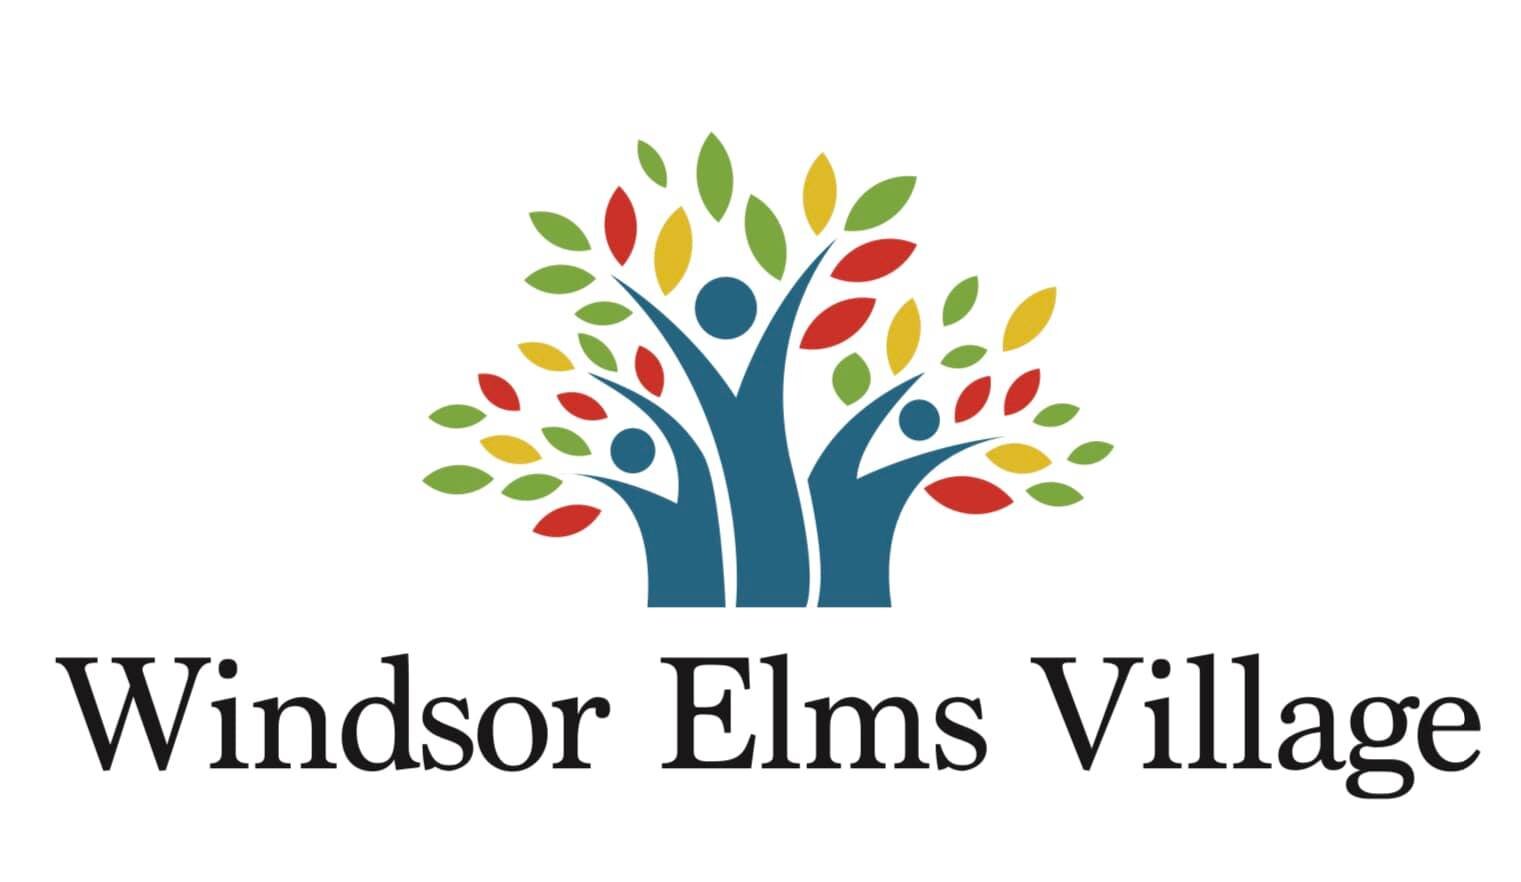 Windsor Elms Village - NEW.jpg